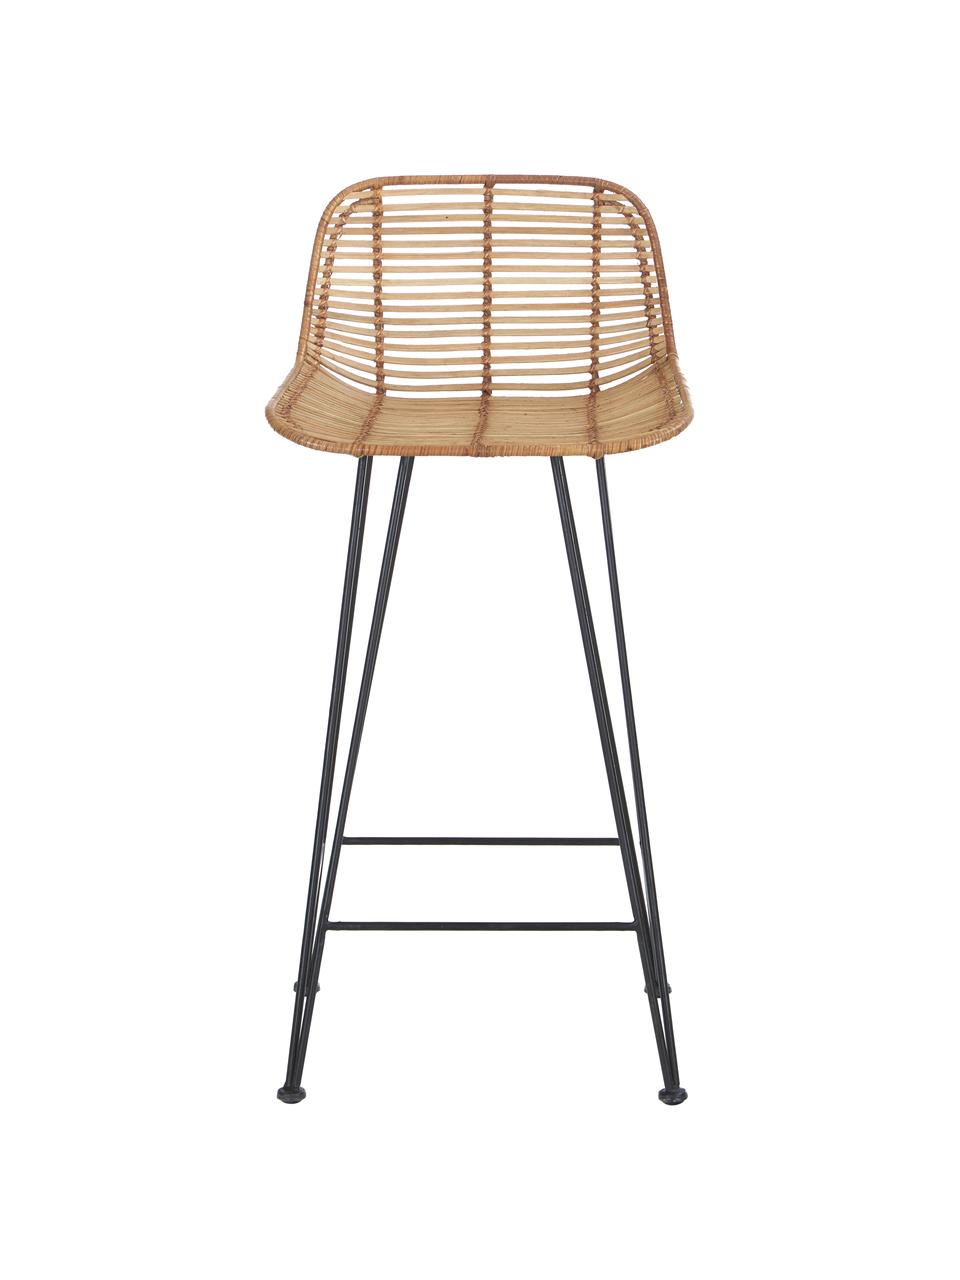 Ratanová barová židle Blind, Ratan, černá, Š 42 cm, V 89 cm